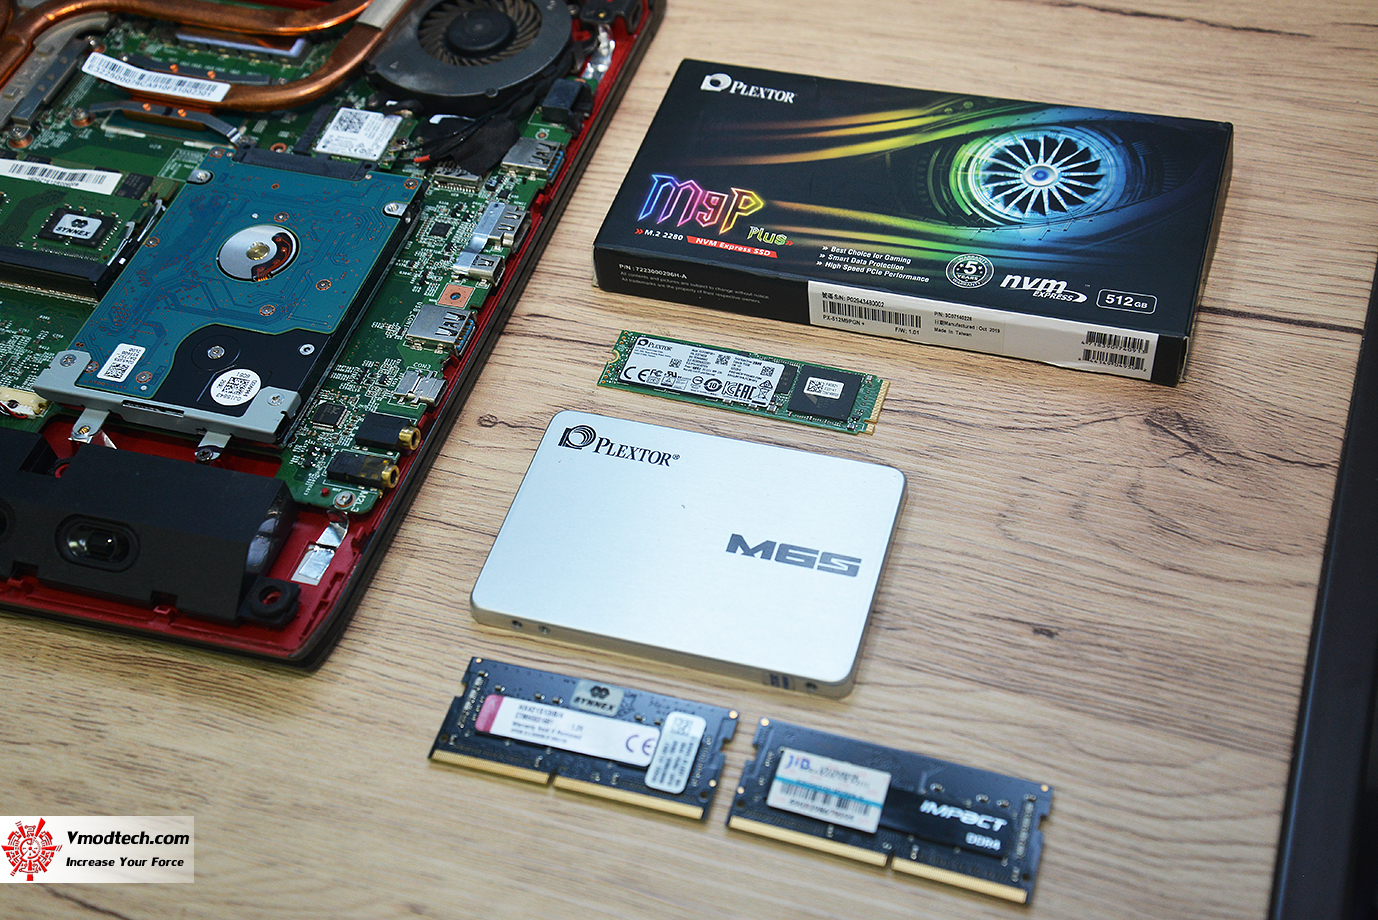 dsc 7515 Upgrade old laptop from HDD to SSD and Memory อัพเกรดแล็ปท็อปรุ่นเก่าให้เร็วแรงขึ้นกว่าเดิมด้วย SSD และ แรม